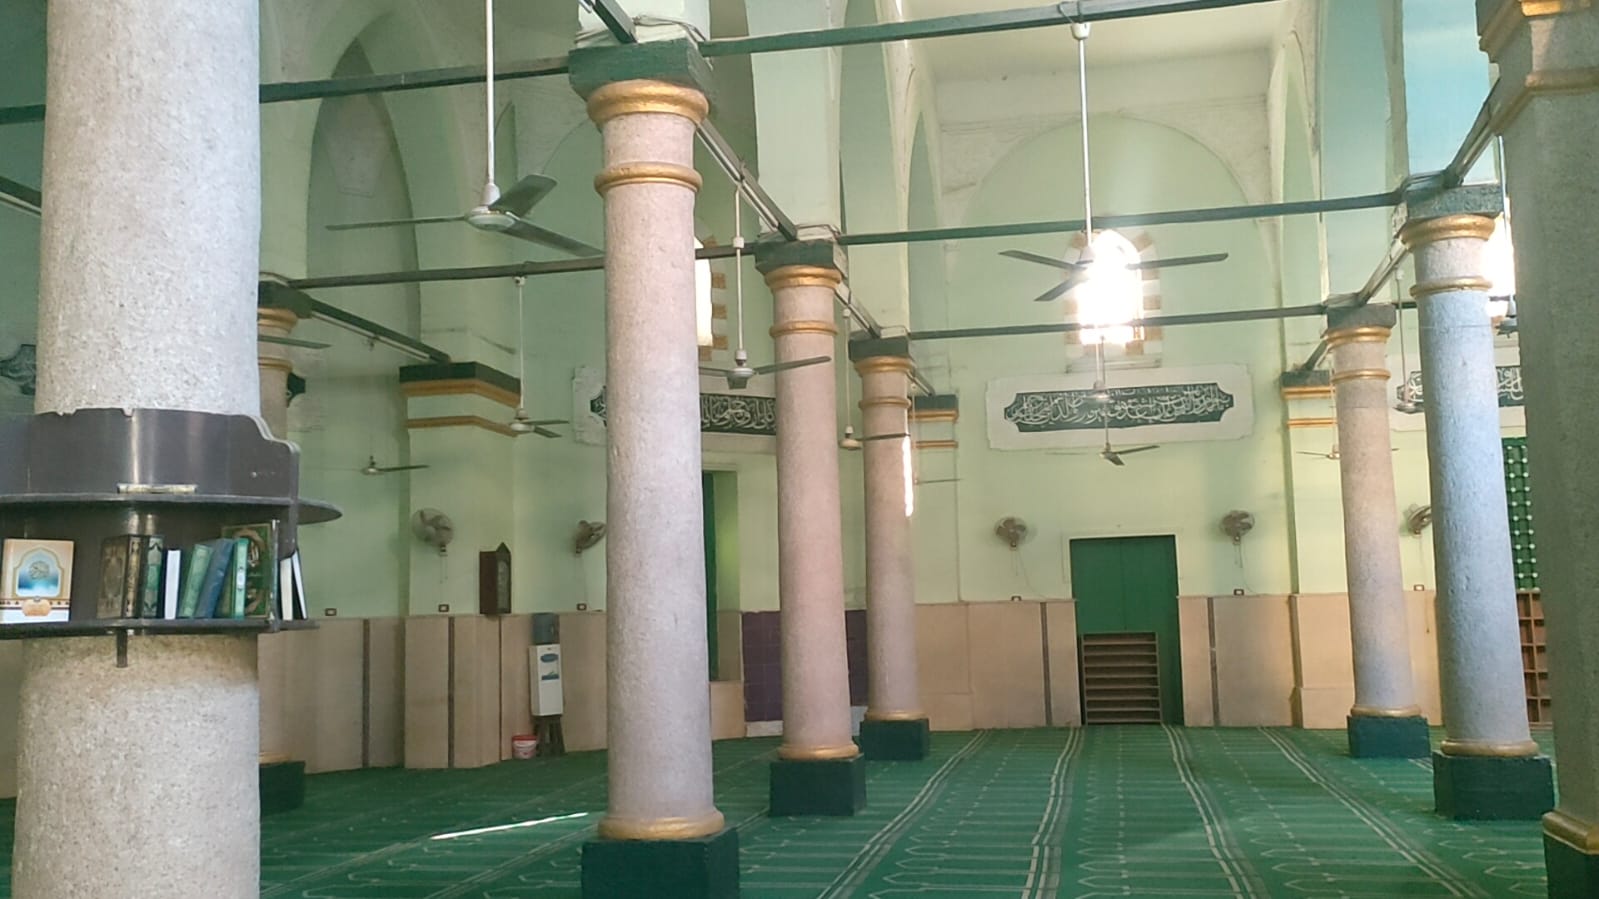 المسجد الأموي من أقدم المساجد التاريخية بأسيوط